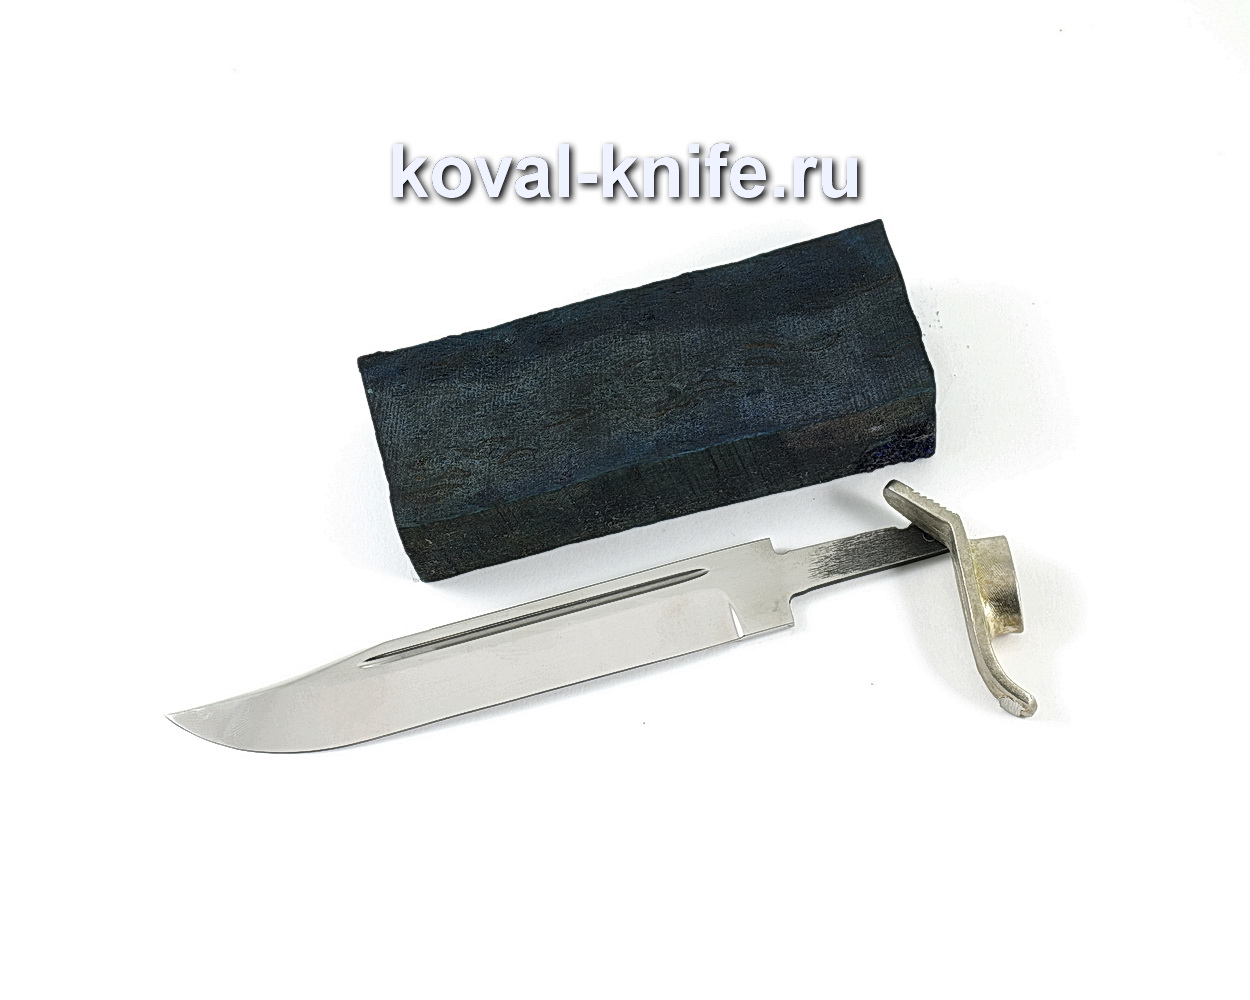 Комплект для ножа НР-40 4 (клинок кованая 95х18 2,4мм, литье 1шт., граб брусок)